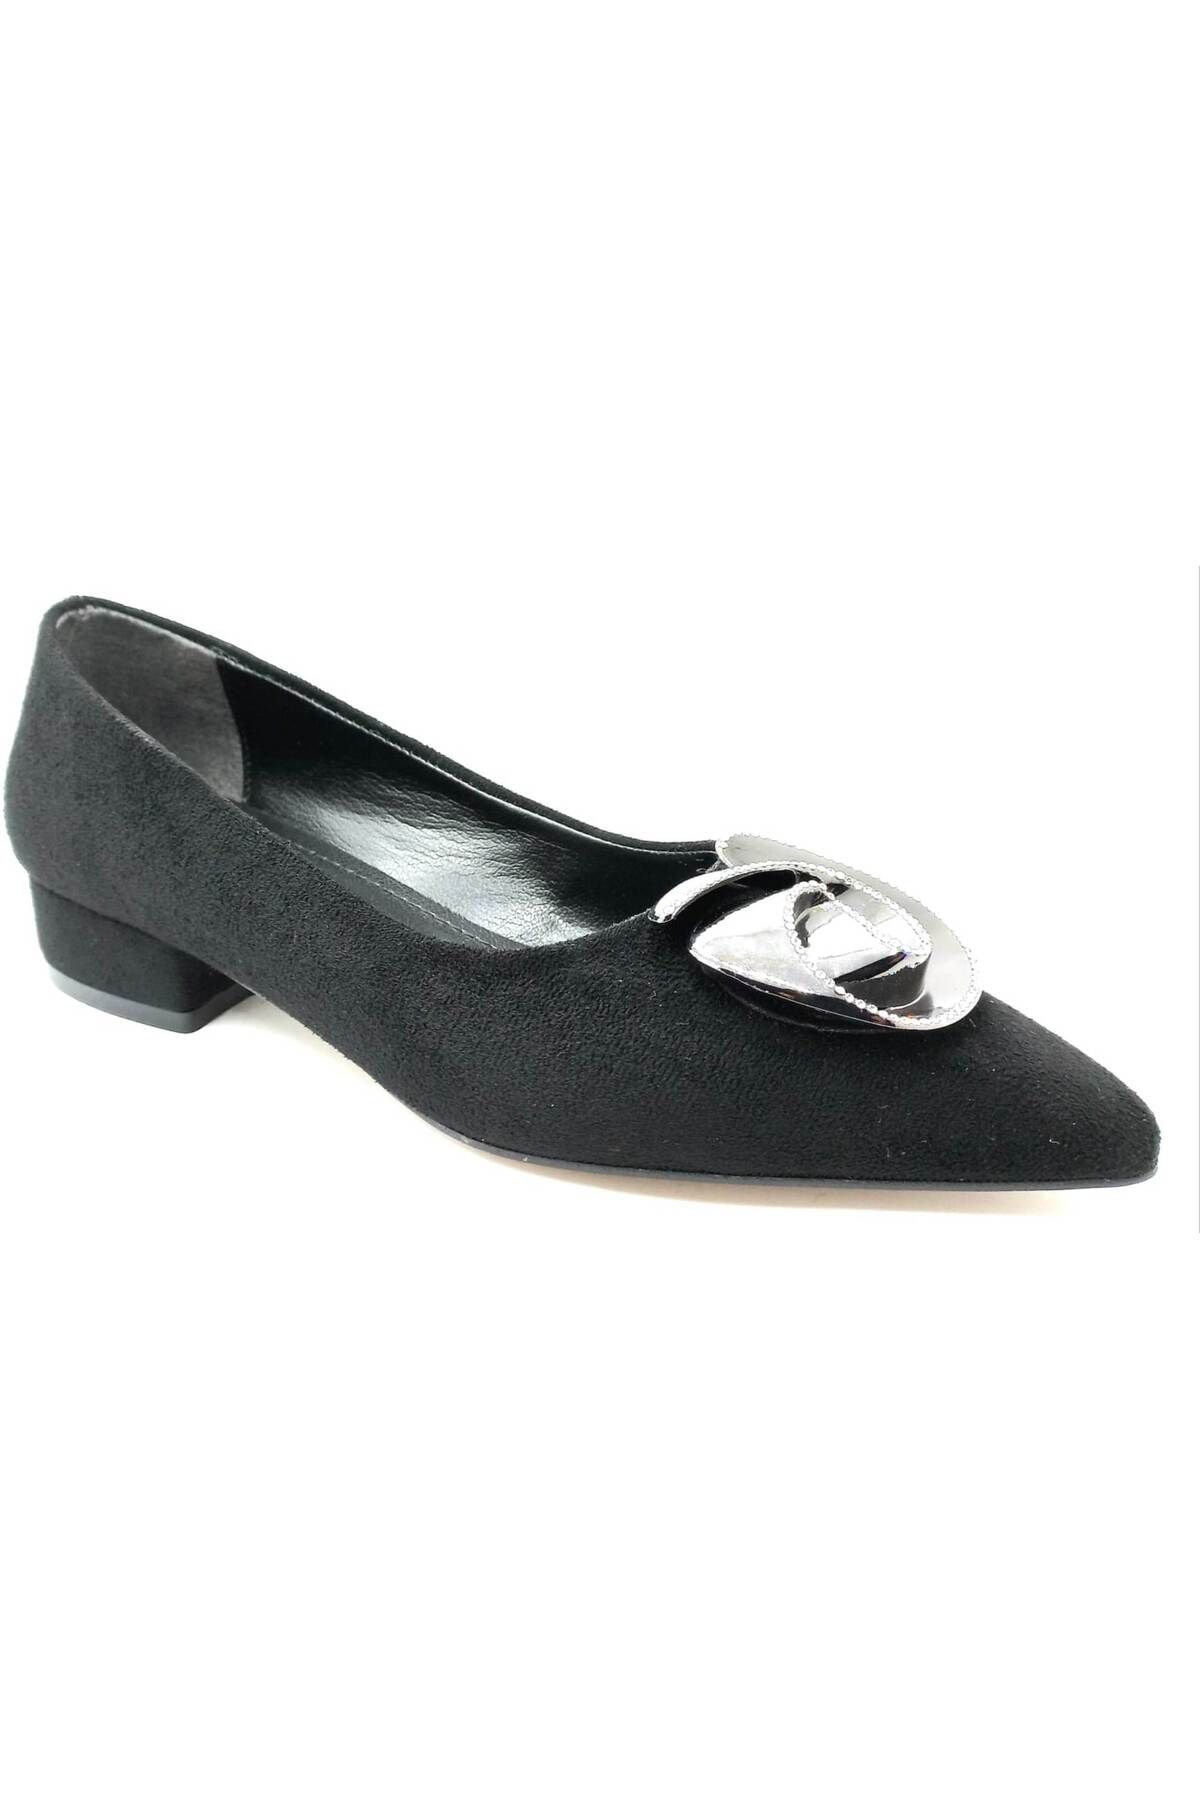 PUNTO 312068 Siyah Süet Kadın Fındık Topuk Ayakkabı